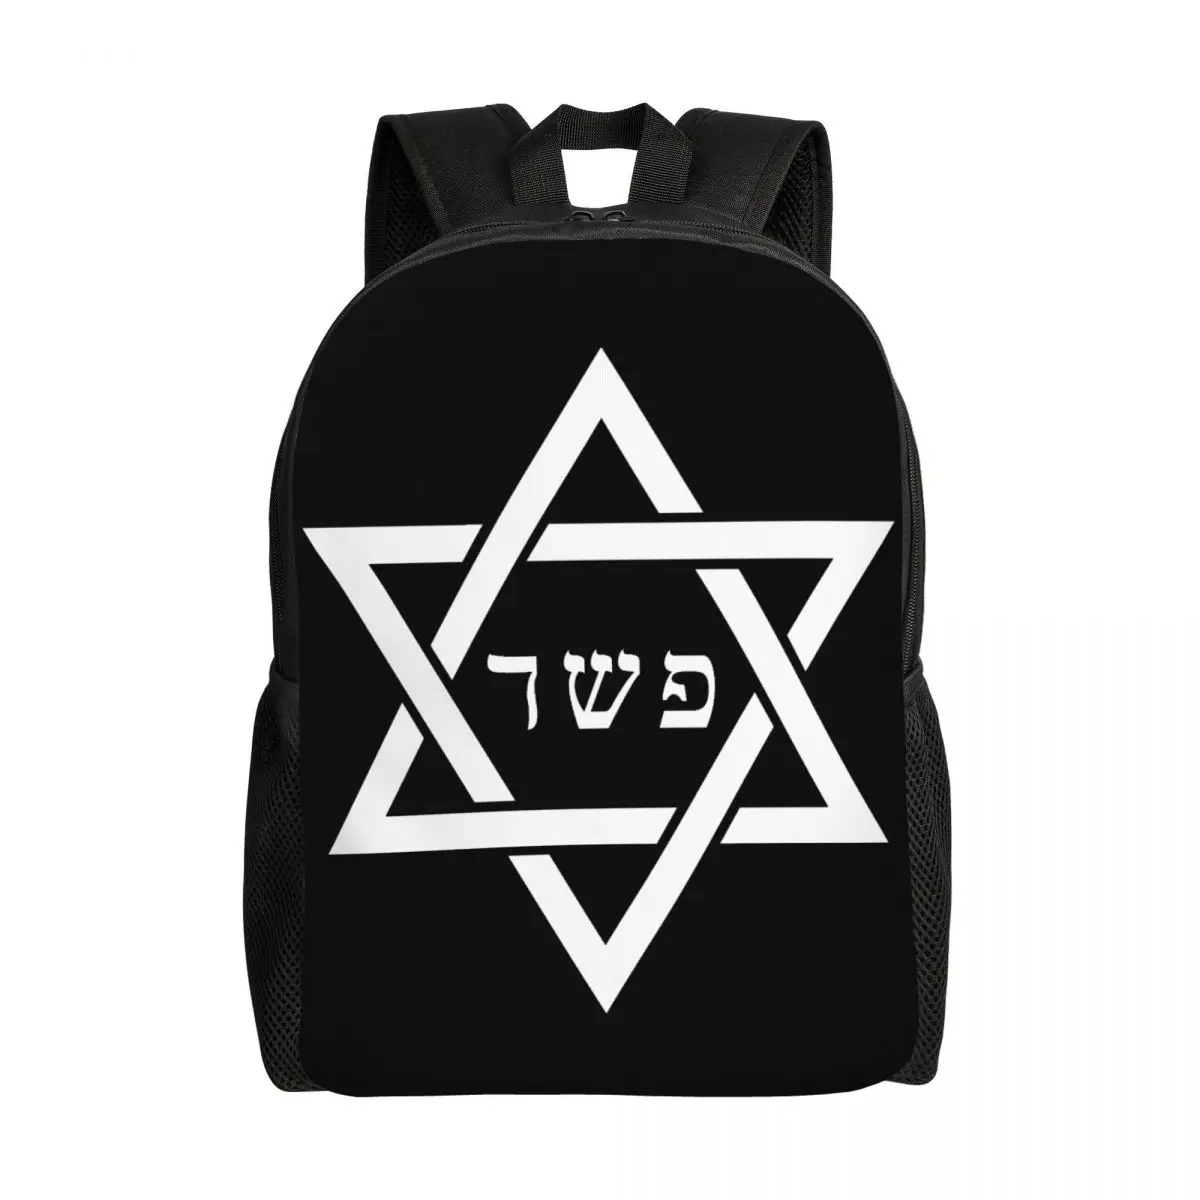 

Whhite Black Star Of David Backpacks for Girls Boys Flag Of Israel College School Travel Bags Women Men Bookbag 15 Inch Laptop